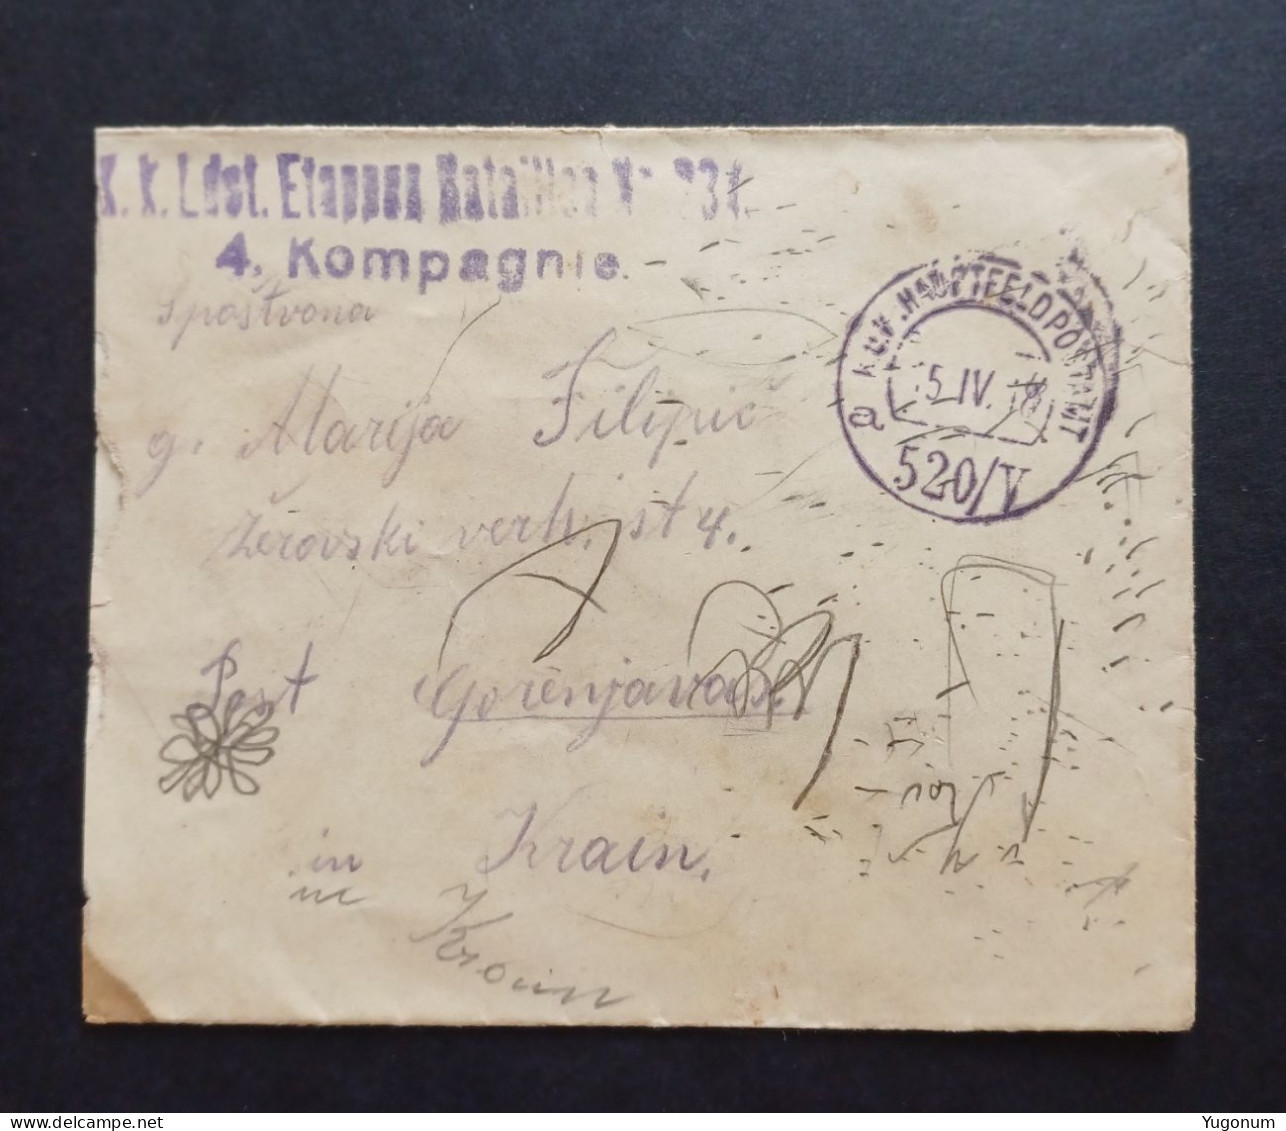 Austria-Hungary Slovenia WWI Small Letter K.u.K. Feldpost -> GORENJA VAS (No 3074) - Slovénie